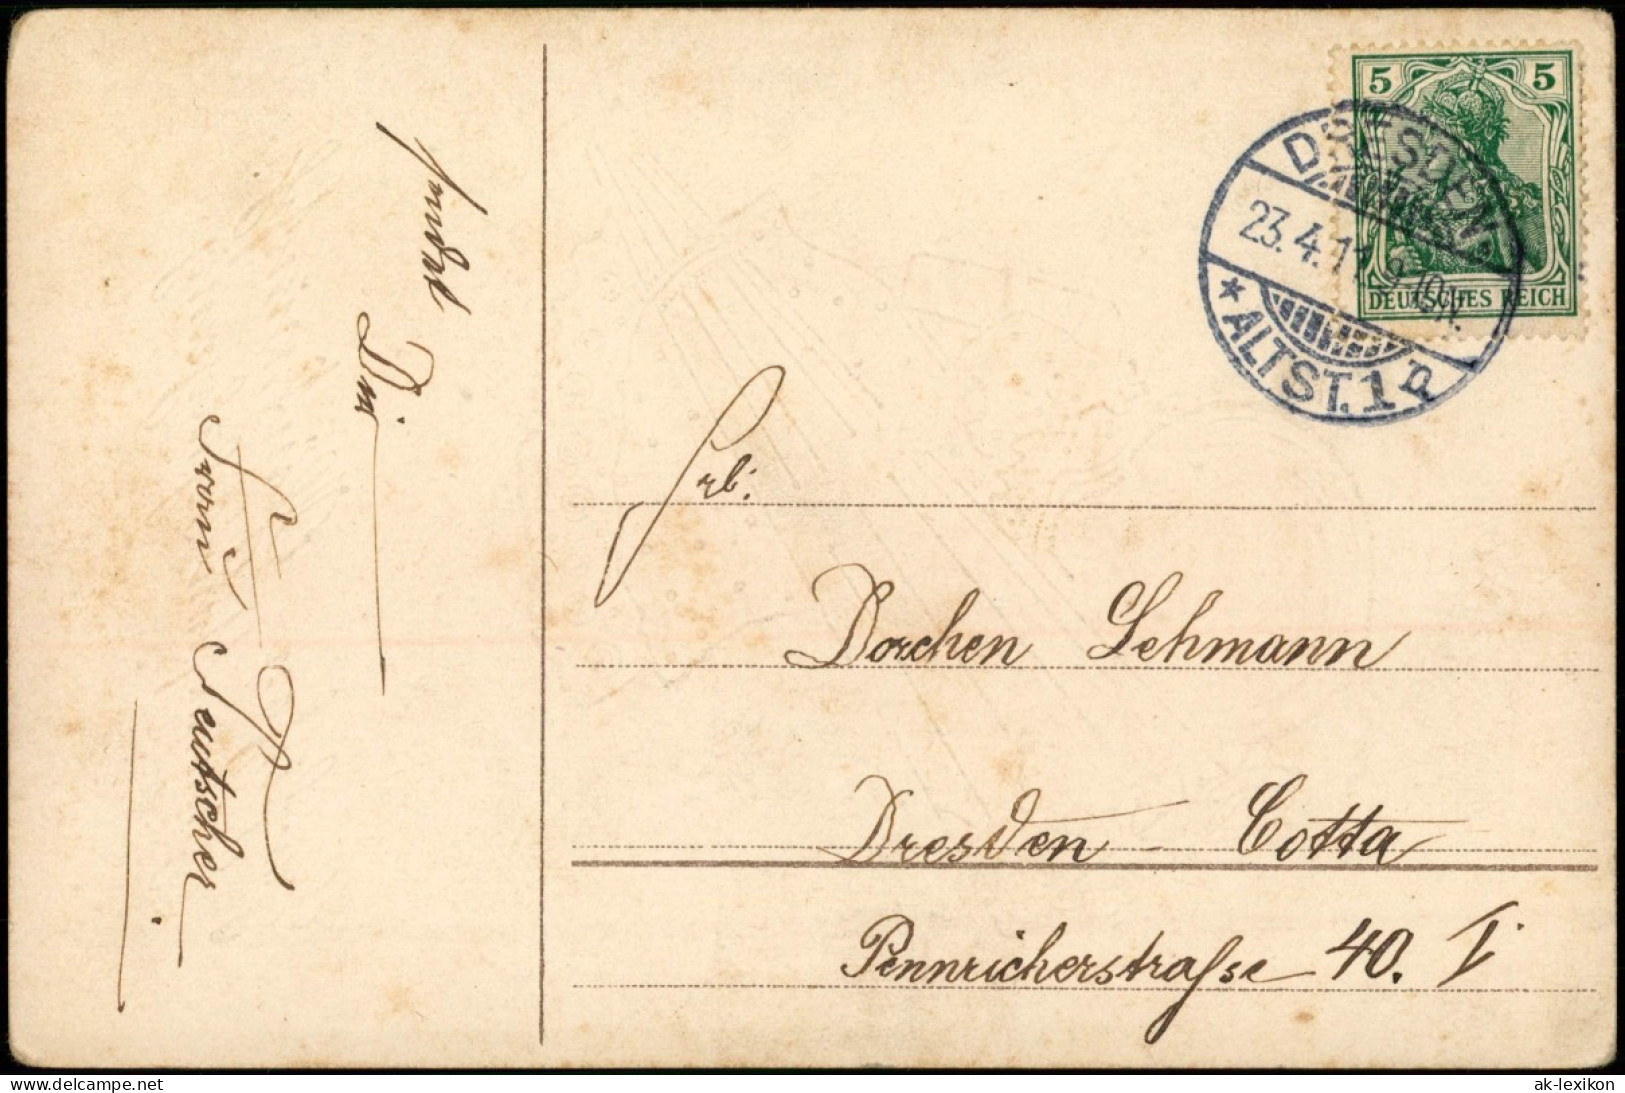 Glückwunsch - Schulanfang/Einschulung Mädchen Mit Zuckertüte Prägekarte 1911 - Premier Jour D'école